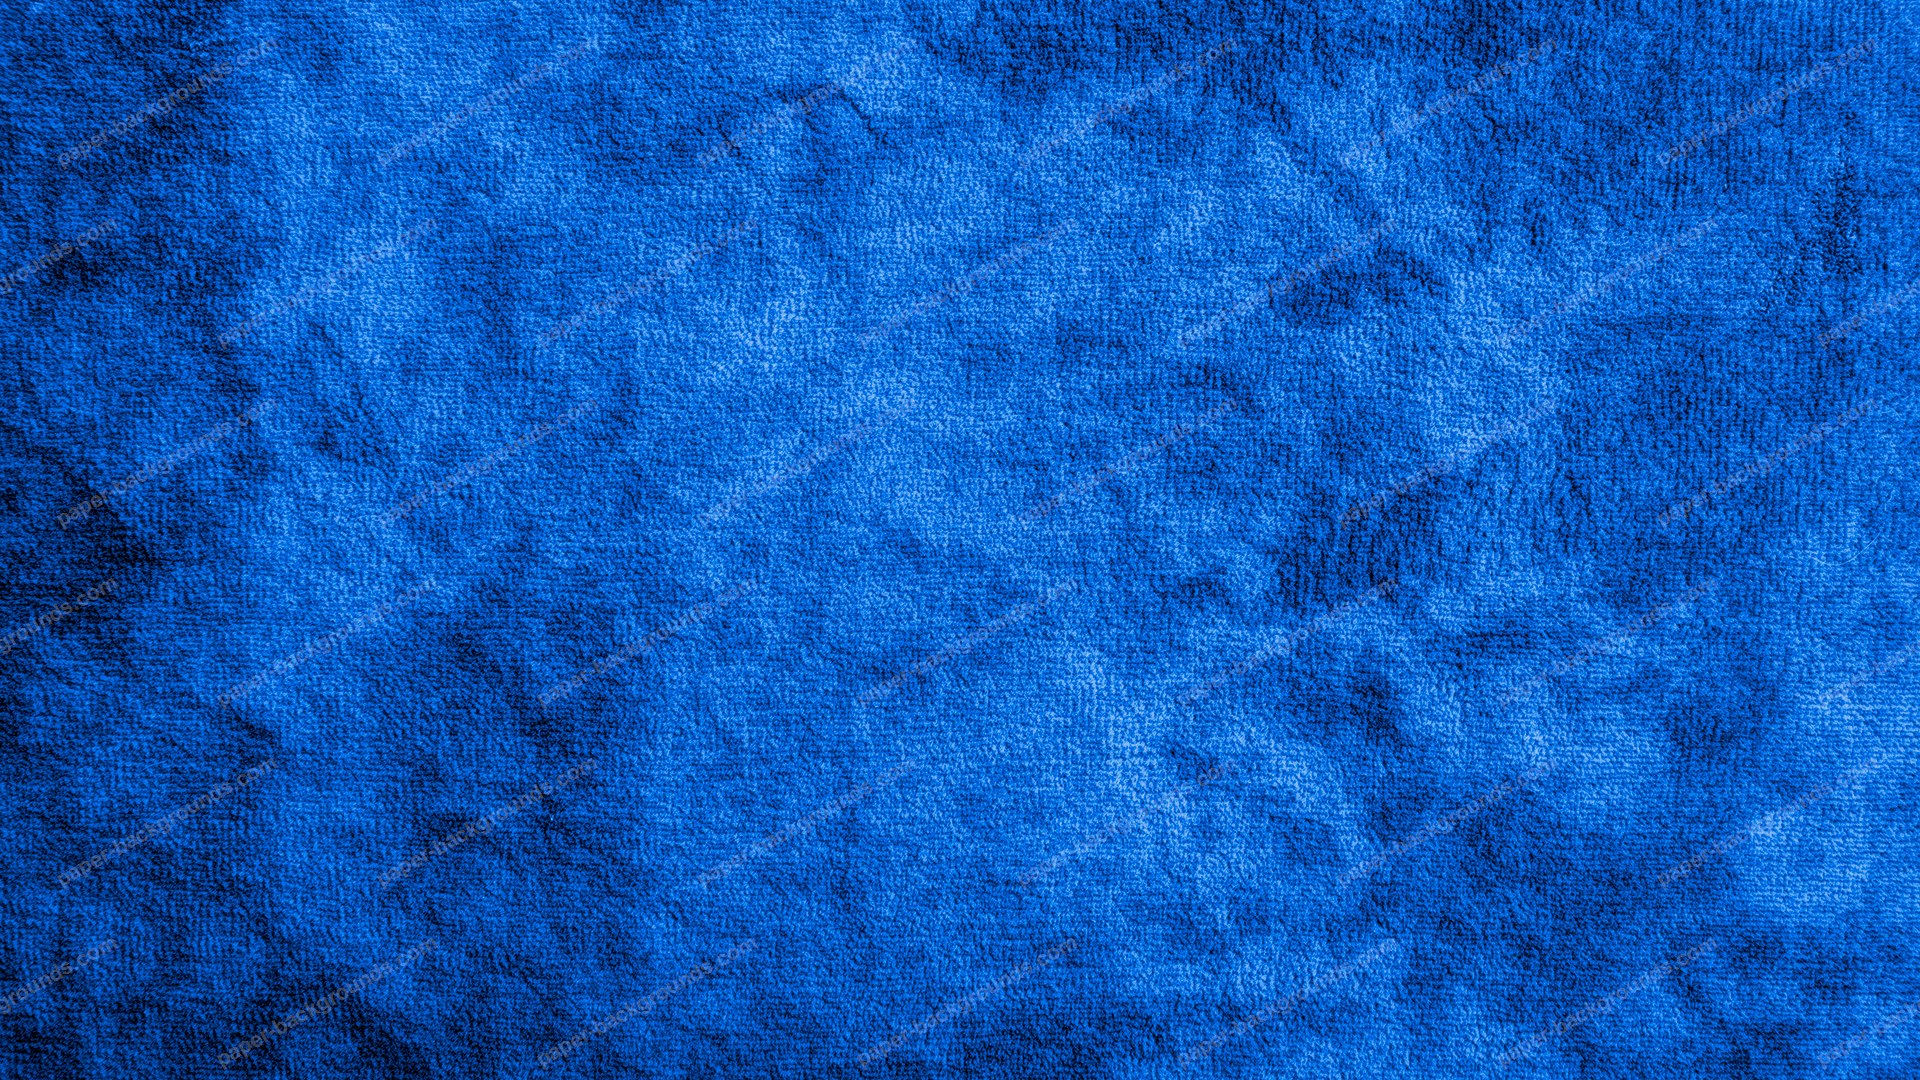 blaue strukturierte tapete,kobaltblau,blau,elektrisches blau,türkis,aqua